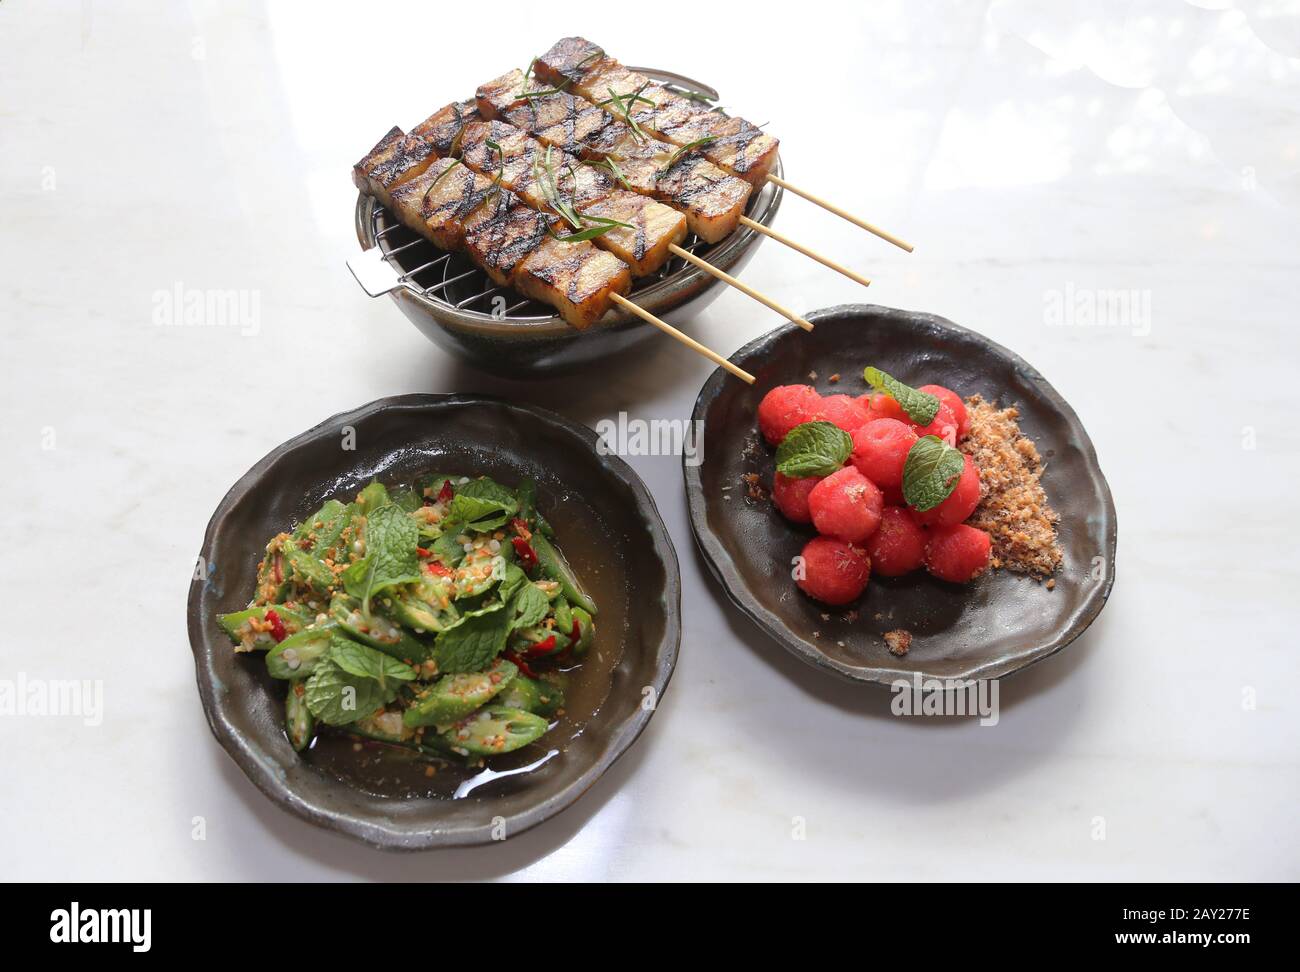 Il cibo tailandese è caratterizzato da piatti preparati con ingredienti aromatici forti e un bordo piccante. Sono presenti rasay di maiale, okra e anguria. Foto Stock